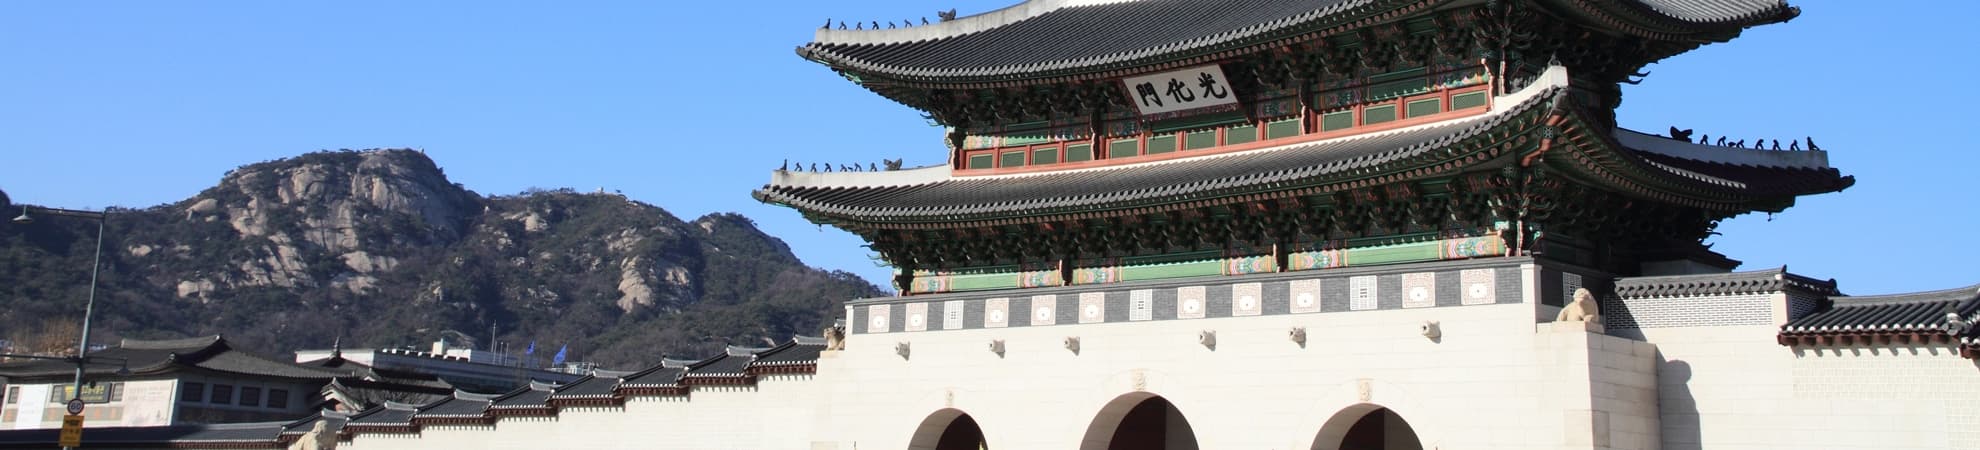 Partir en vacances dans les endroits intéressants sud-coréens